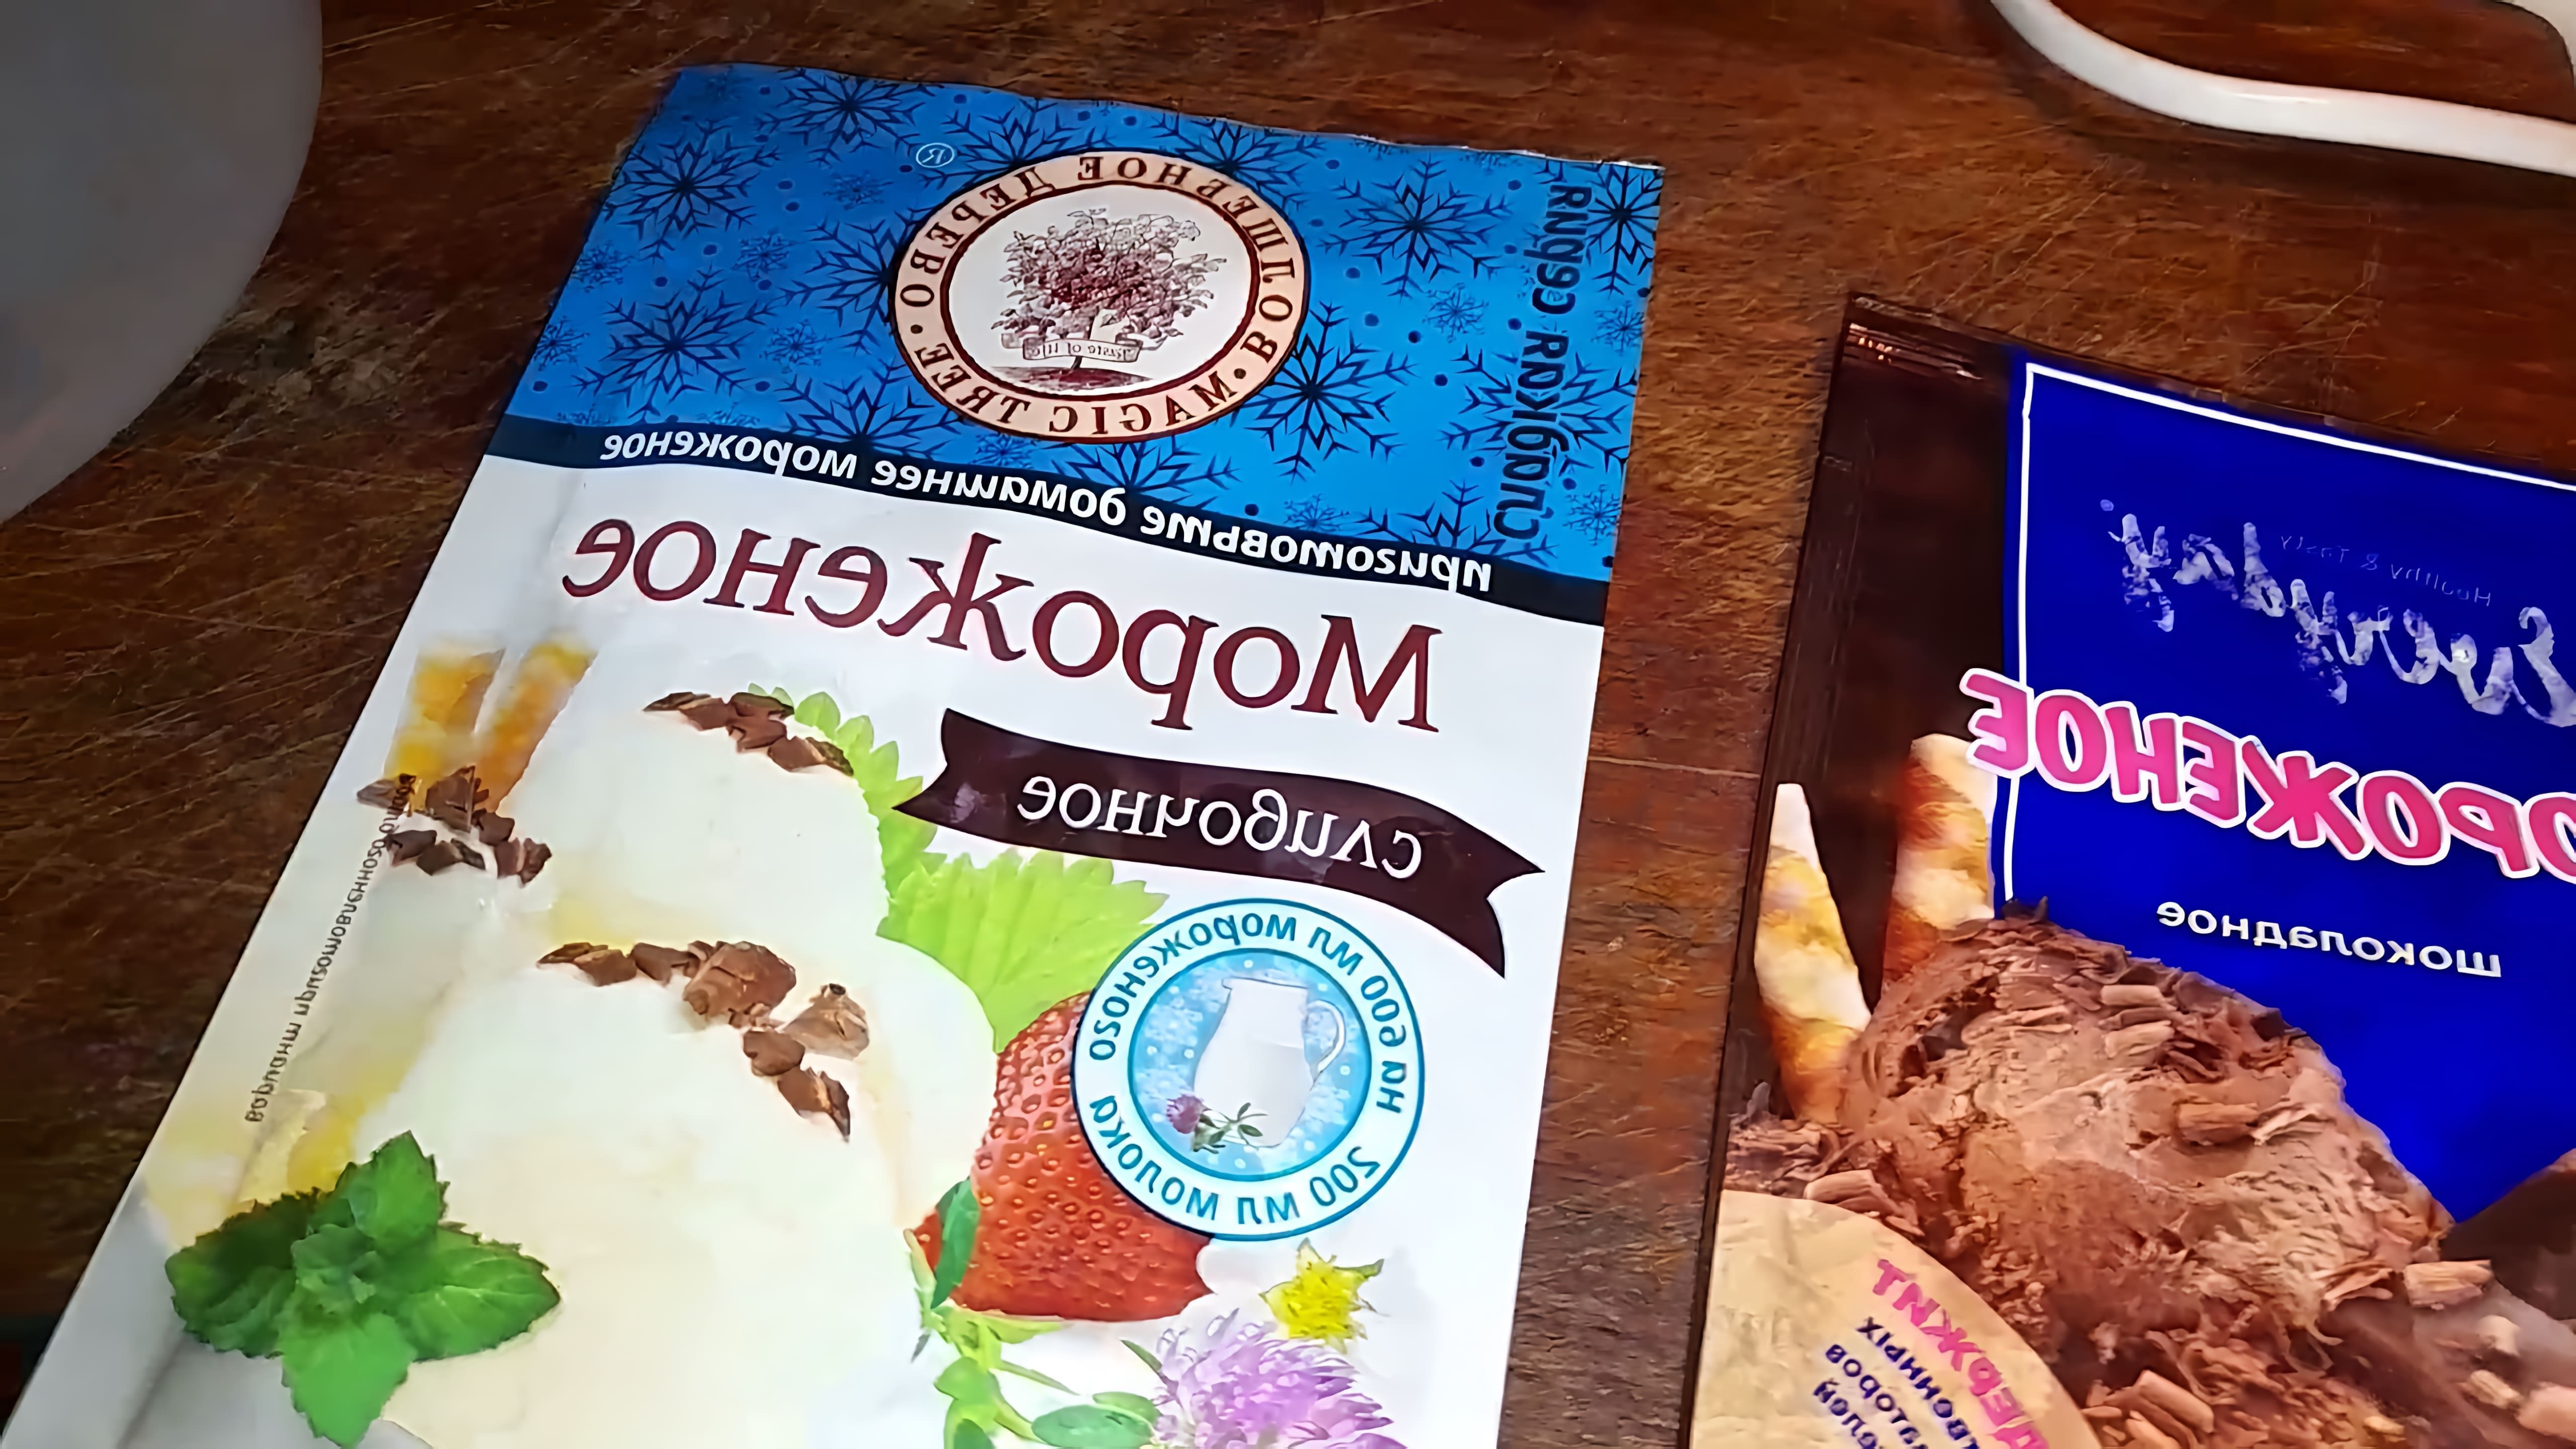 В данном видео проводится тест драйв мороженого из пакетиков, сравниваются два разных вида мороженого: шоколадное и сливочное